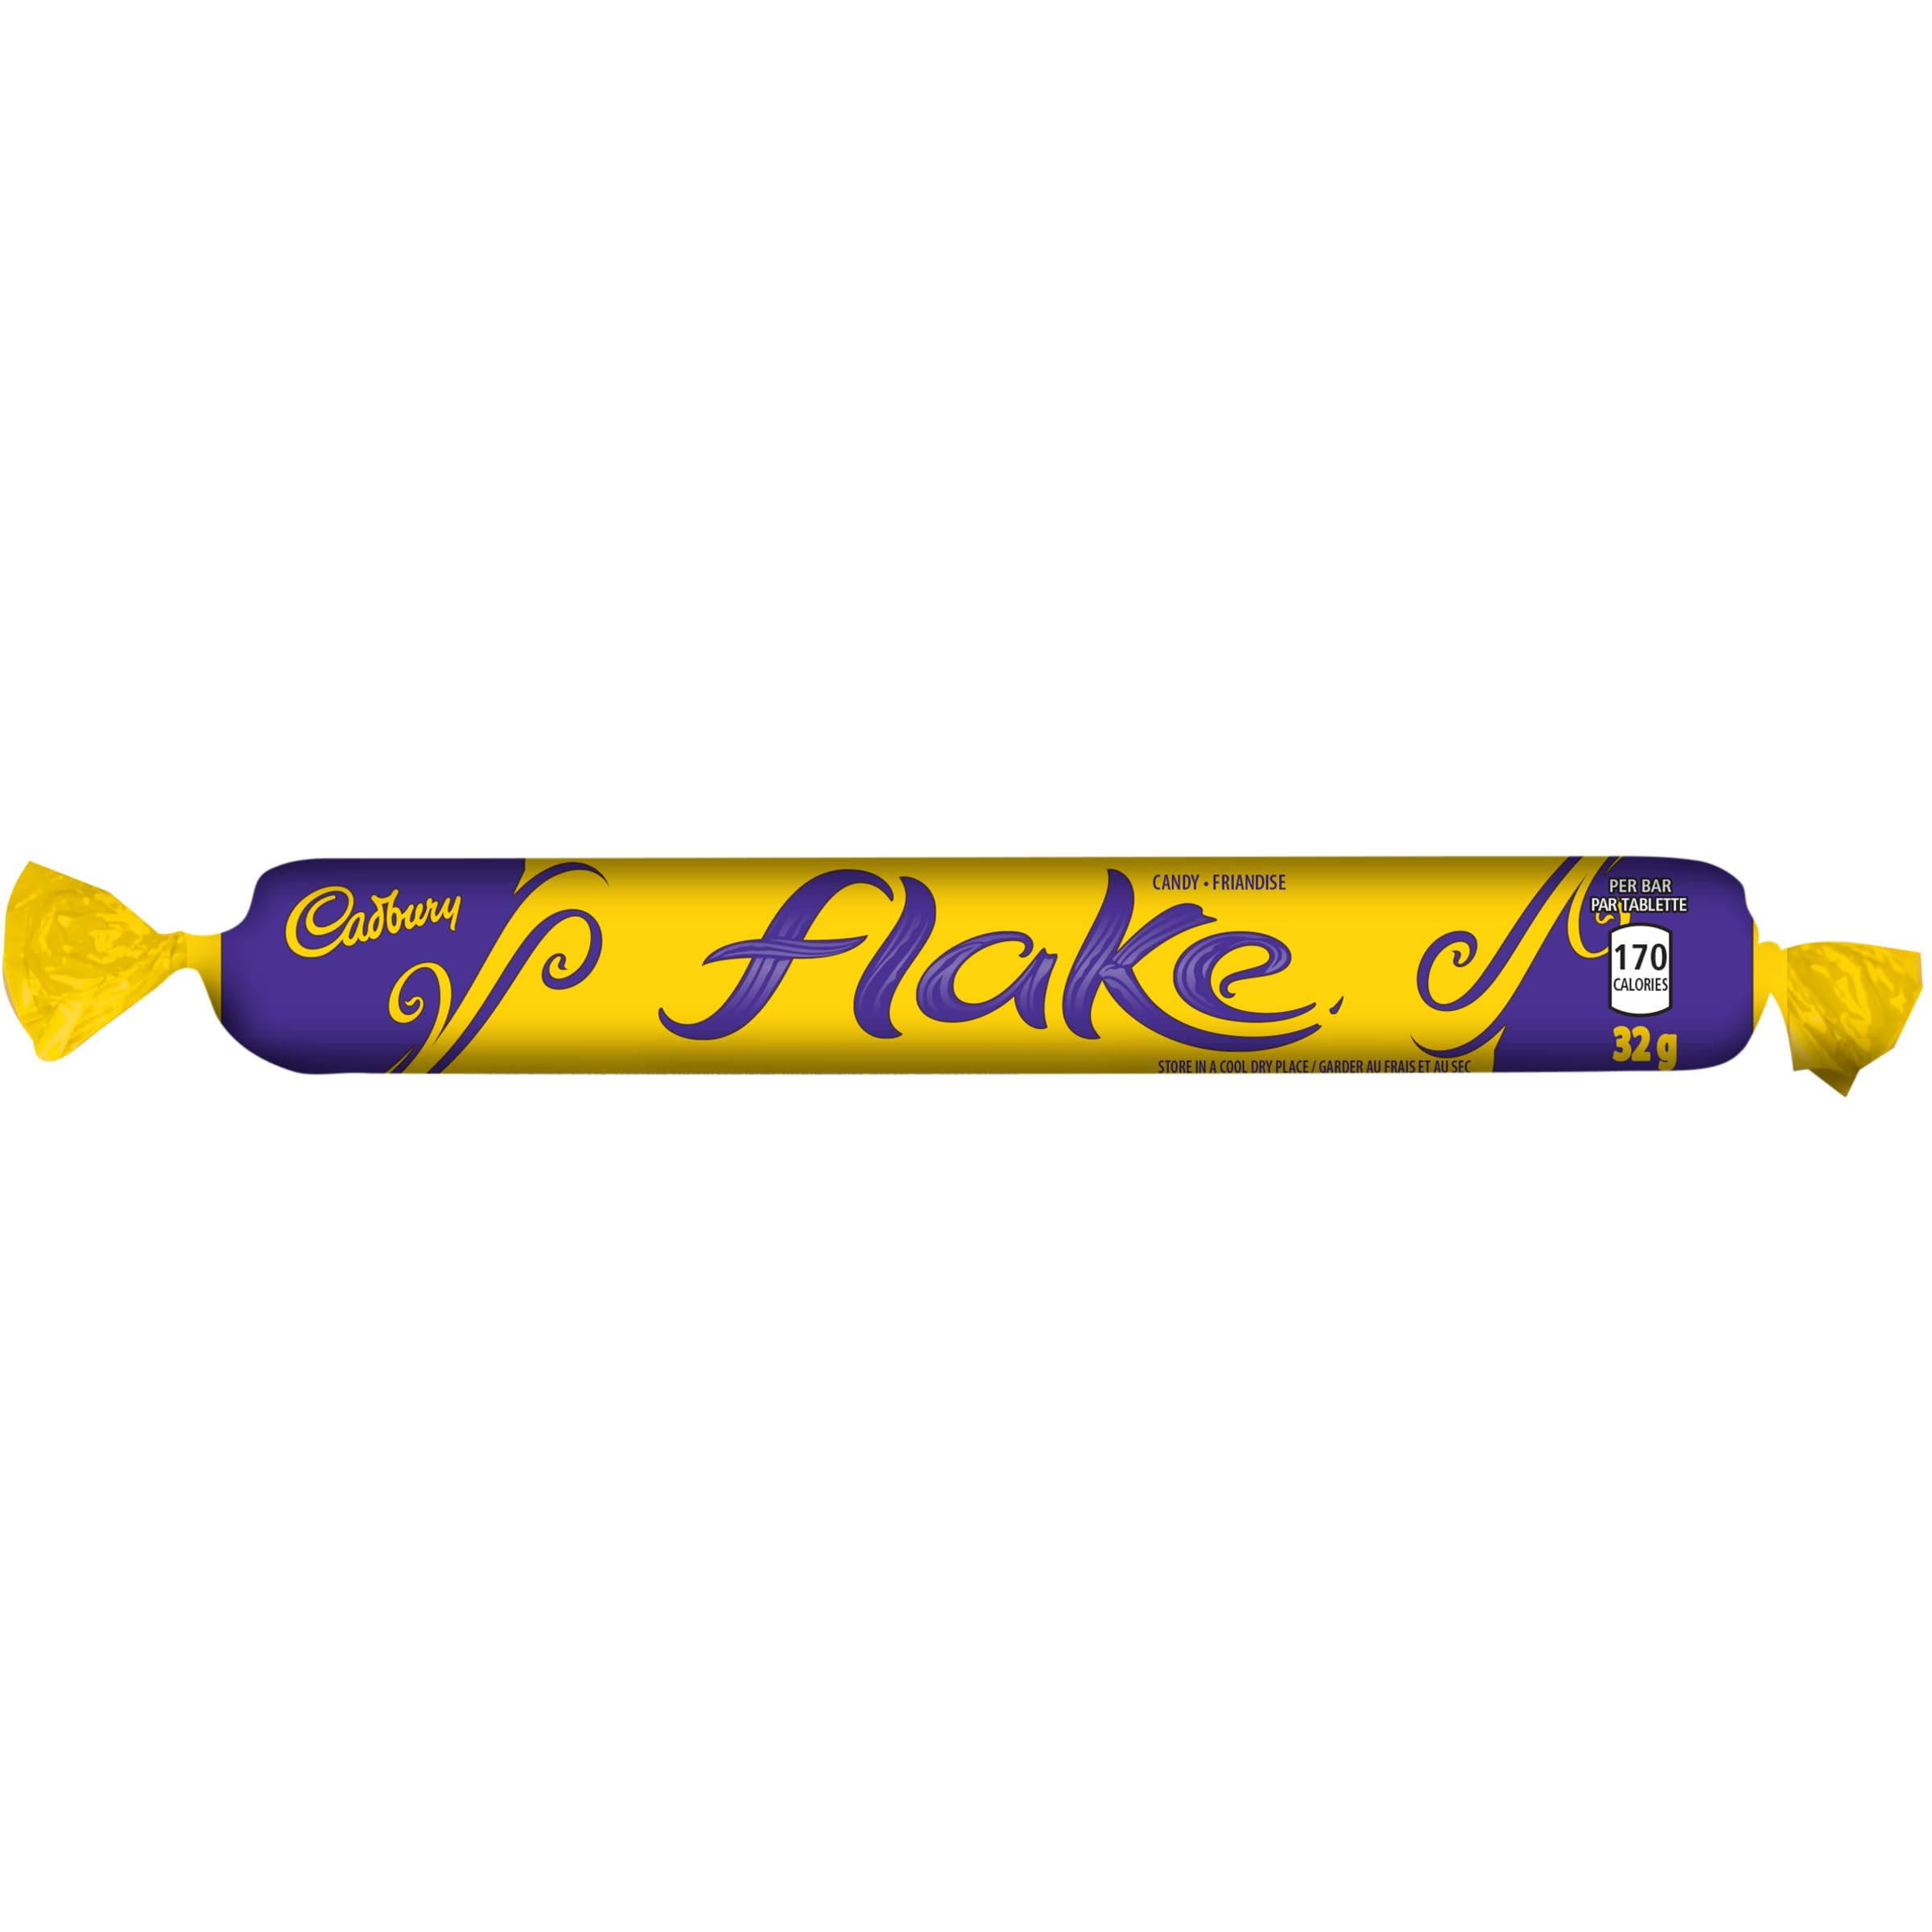 Cadbury Flake Bar - 32g